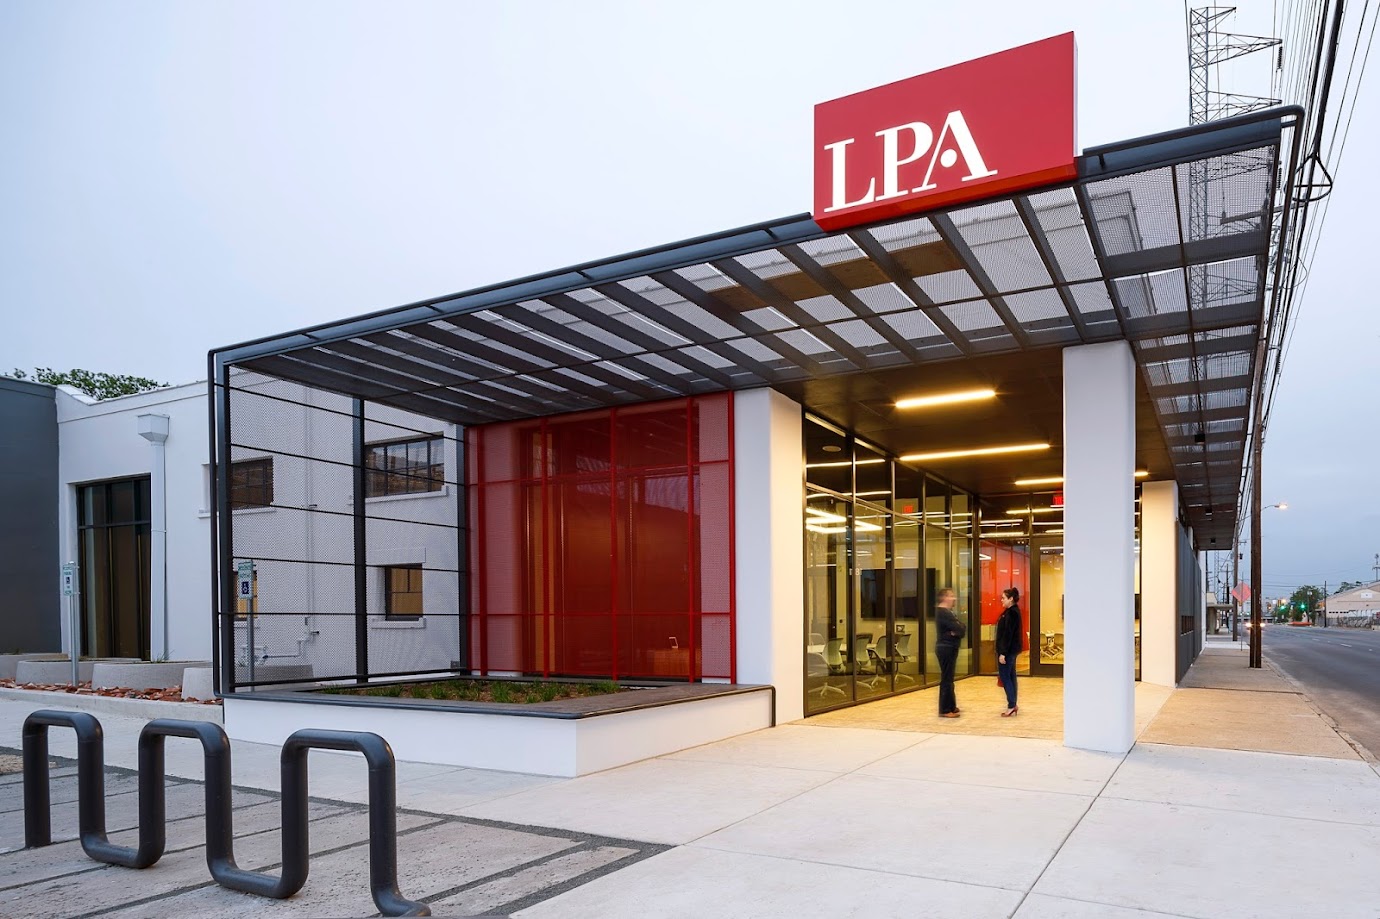 LPA Design Studios in San Antonio